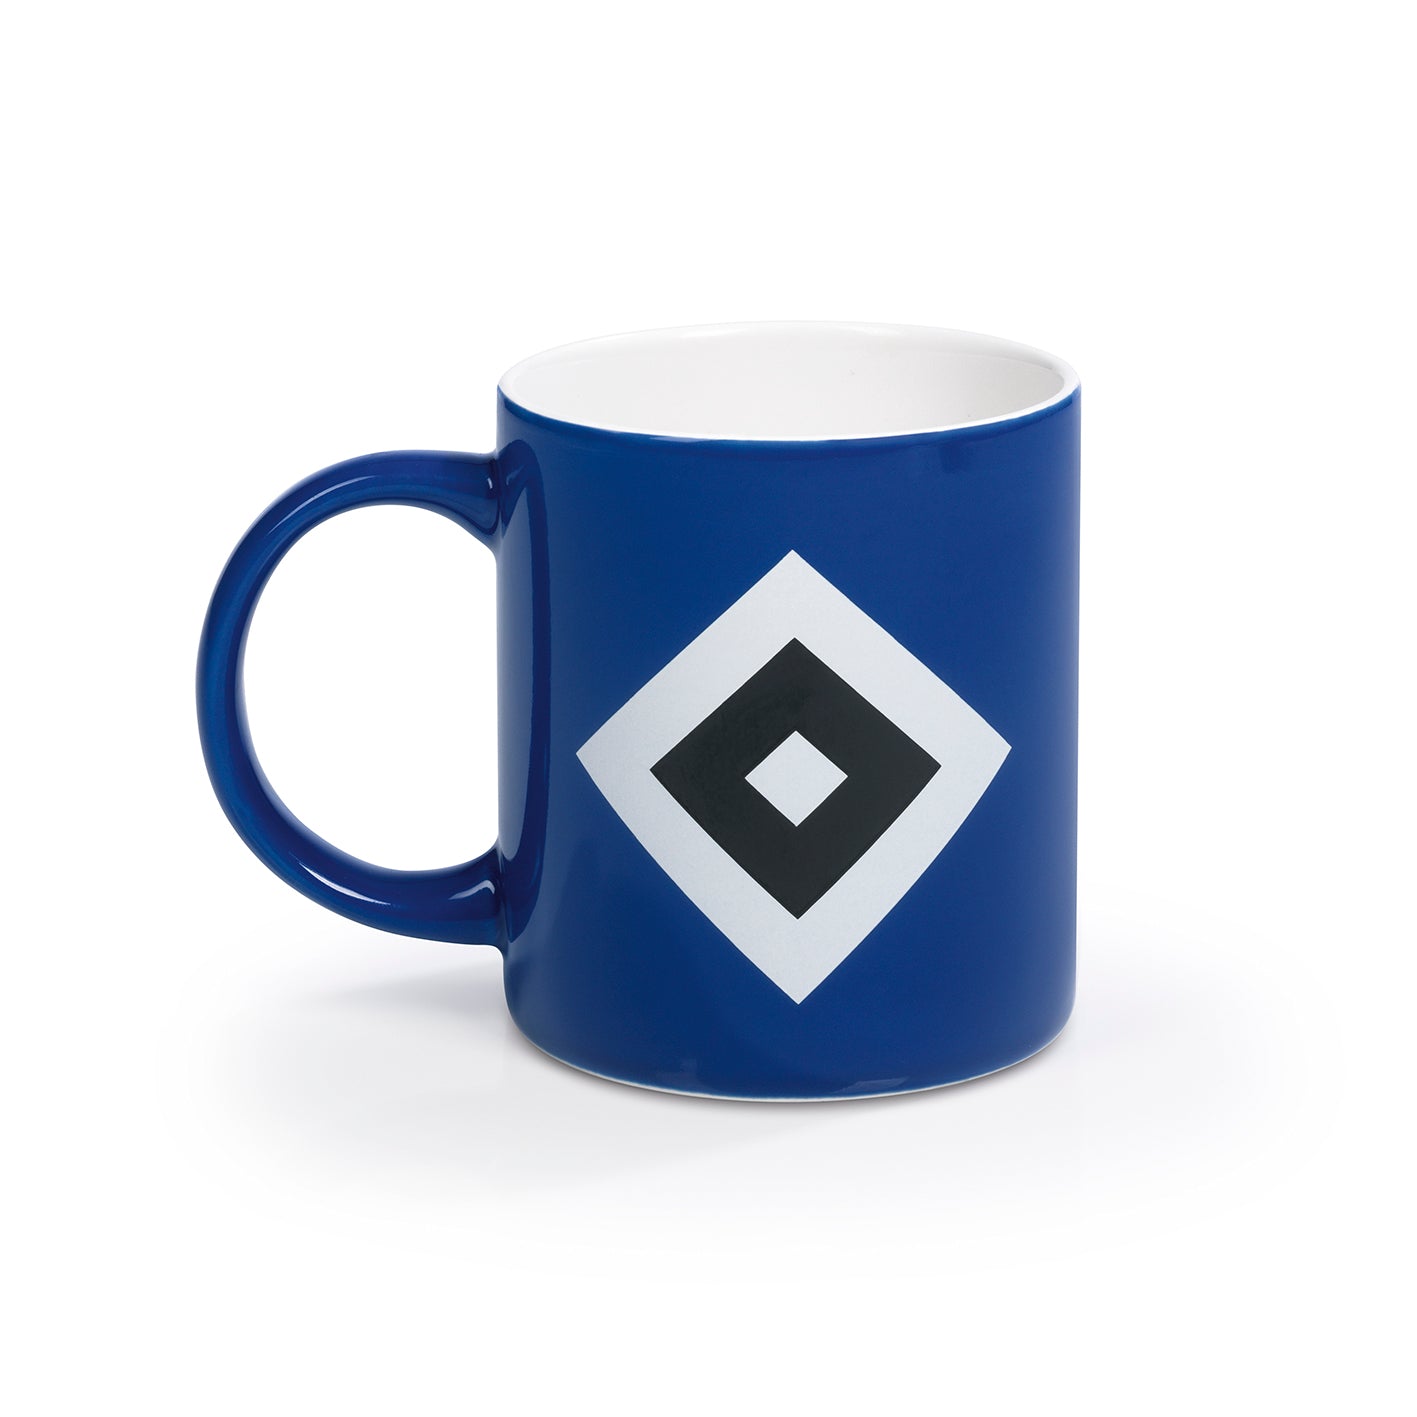 Kaffeebecher - Offizieller HSV Fanartikel - 350 ml - blau/weiß/schwarz mit Logo